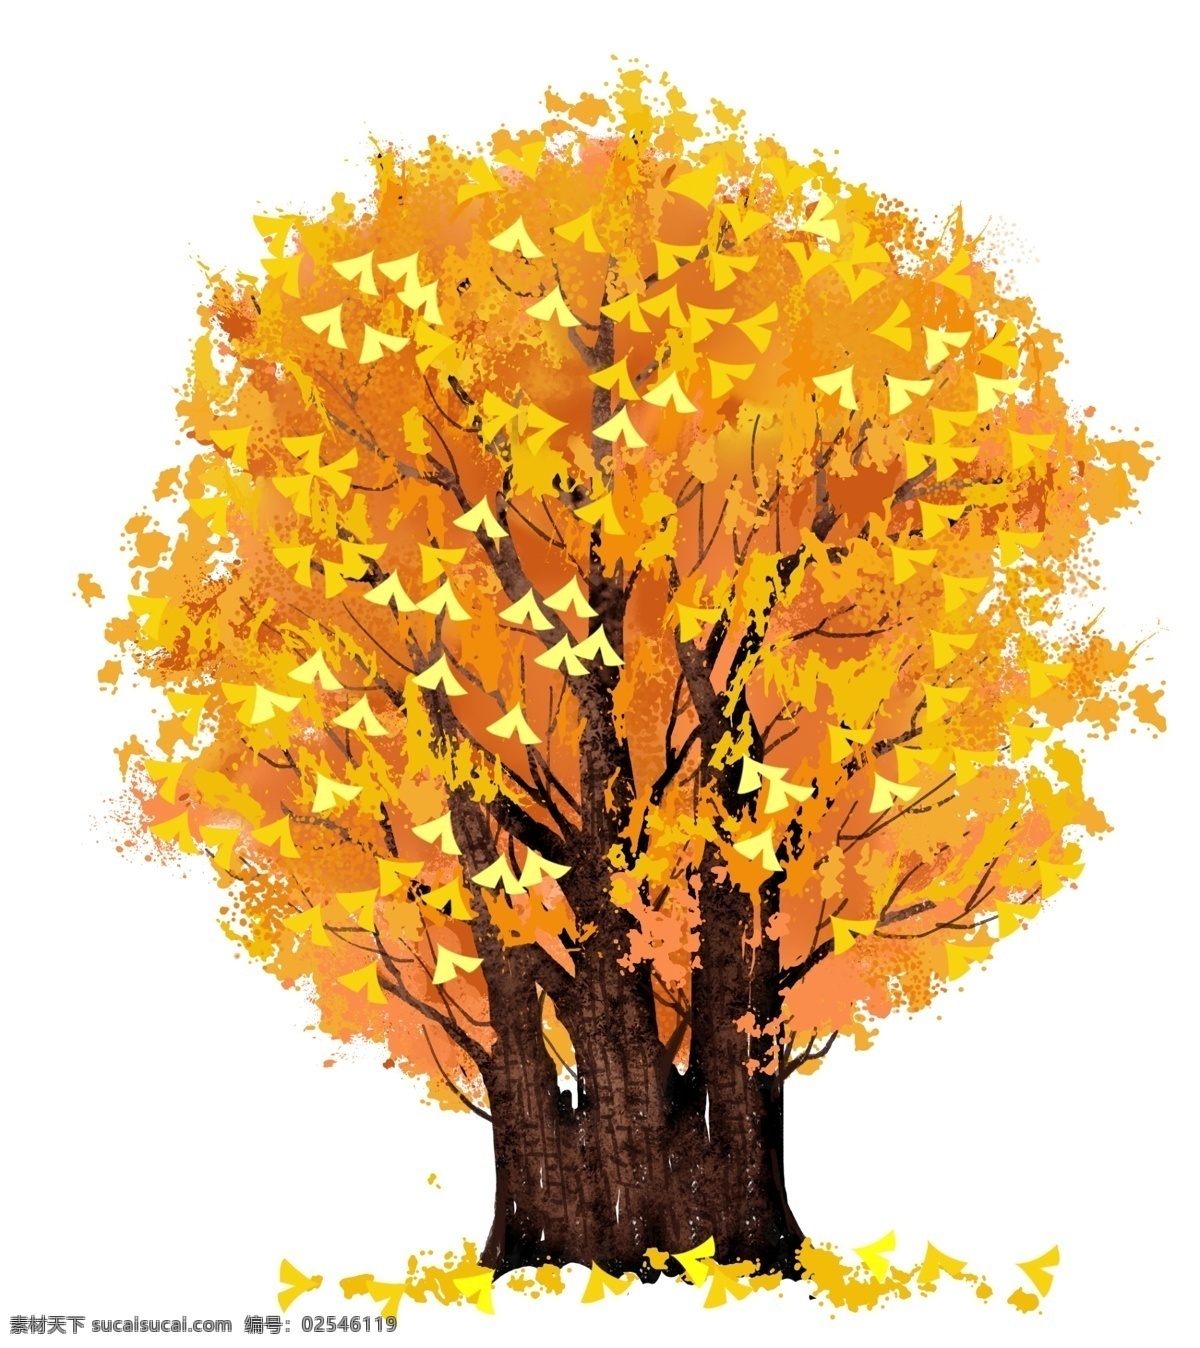 一棵树 黄色 叶子 树木 树叶黄了 秋季树木 黄色叶子 植物 黄色叶子树木 树木插图 树干